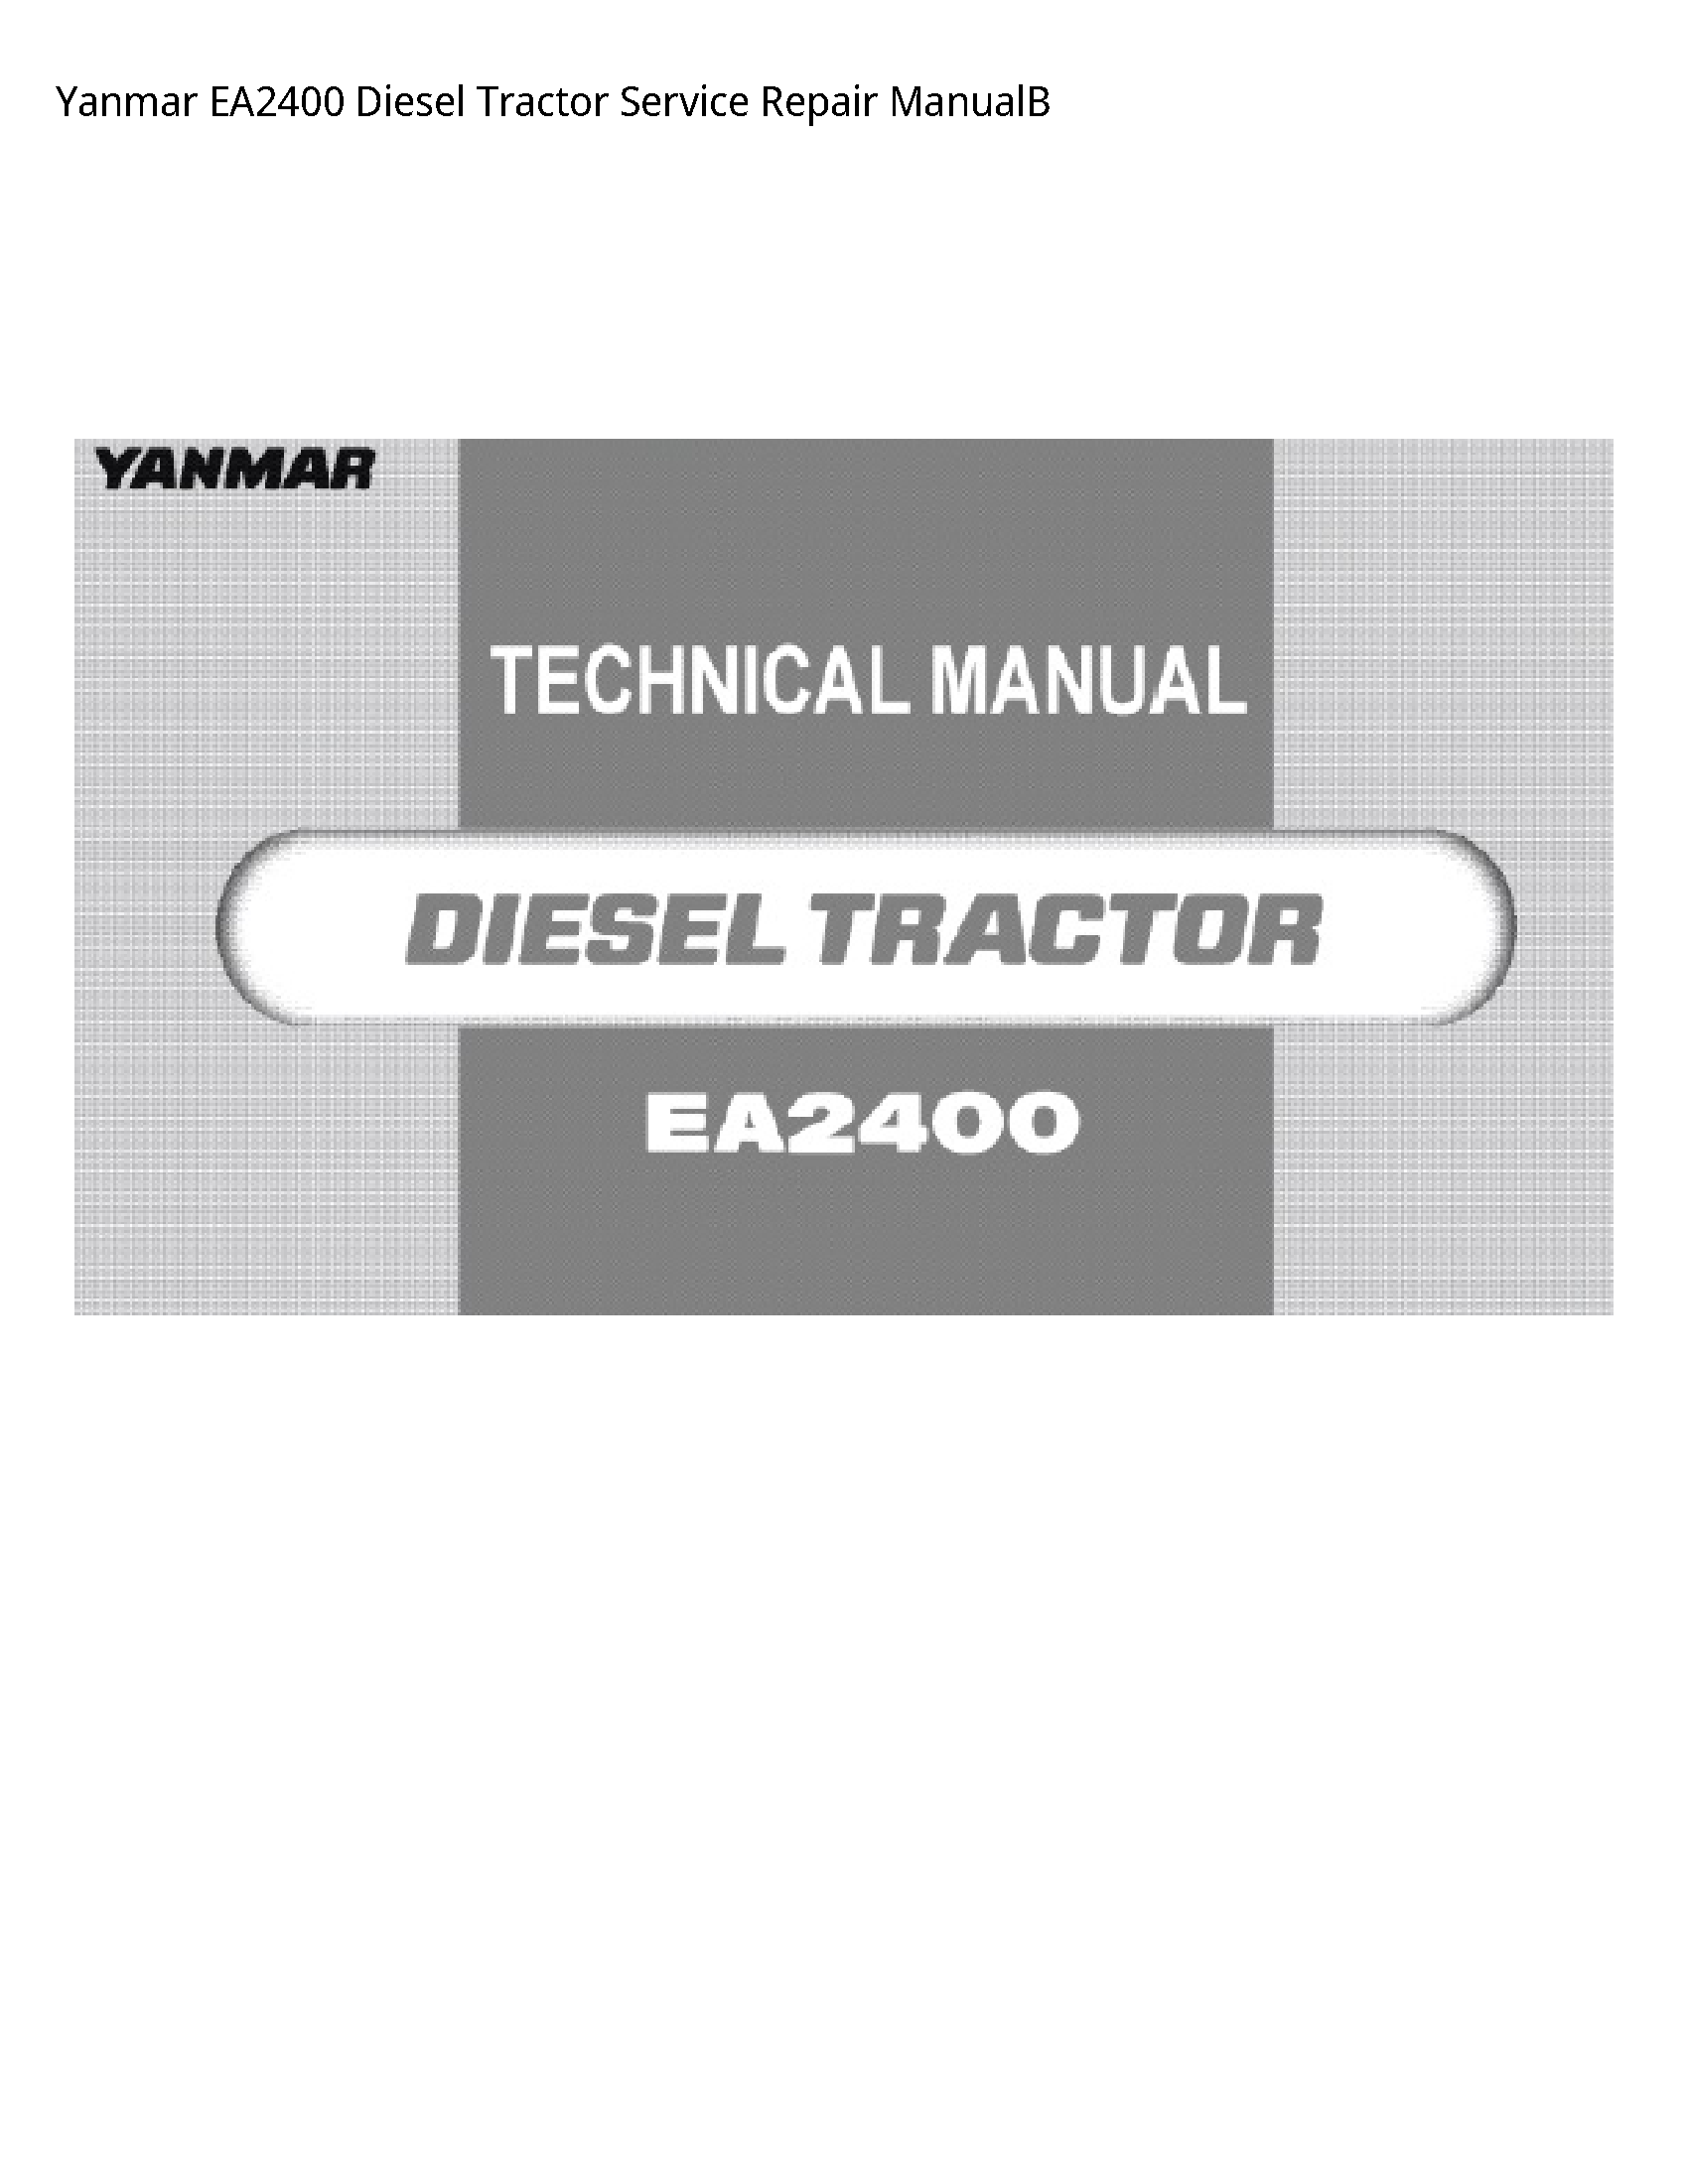 Yanmar EA2400 Diesel Tractor manual